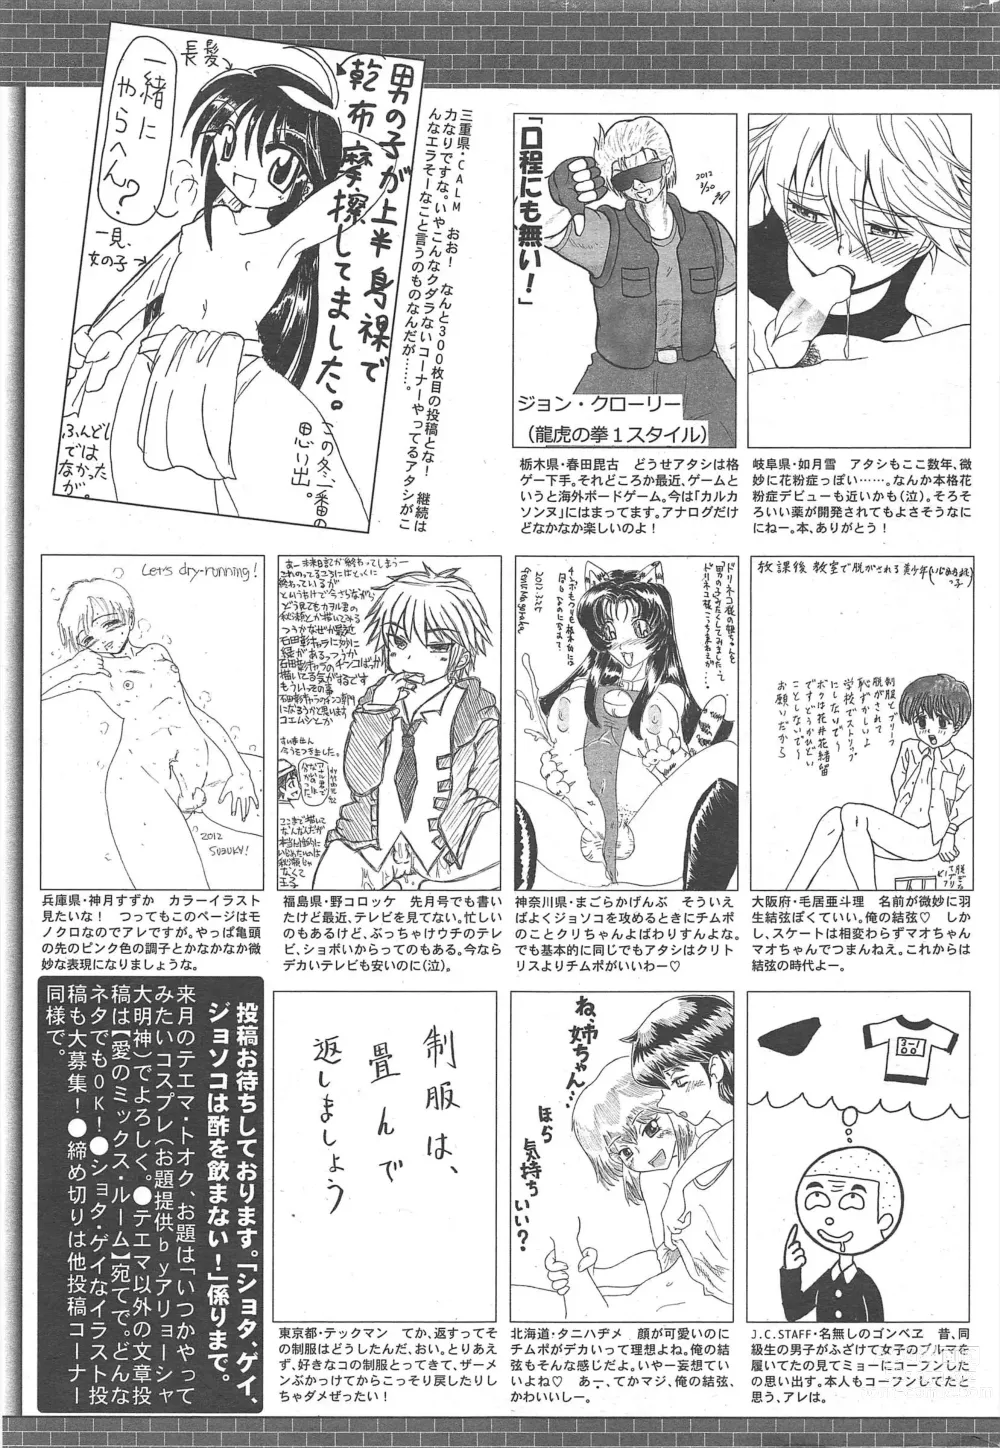 Page 329 of manga Manga Bangaichi 2012-06